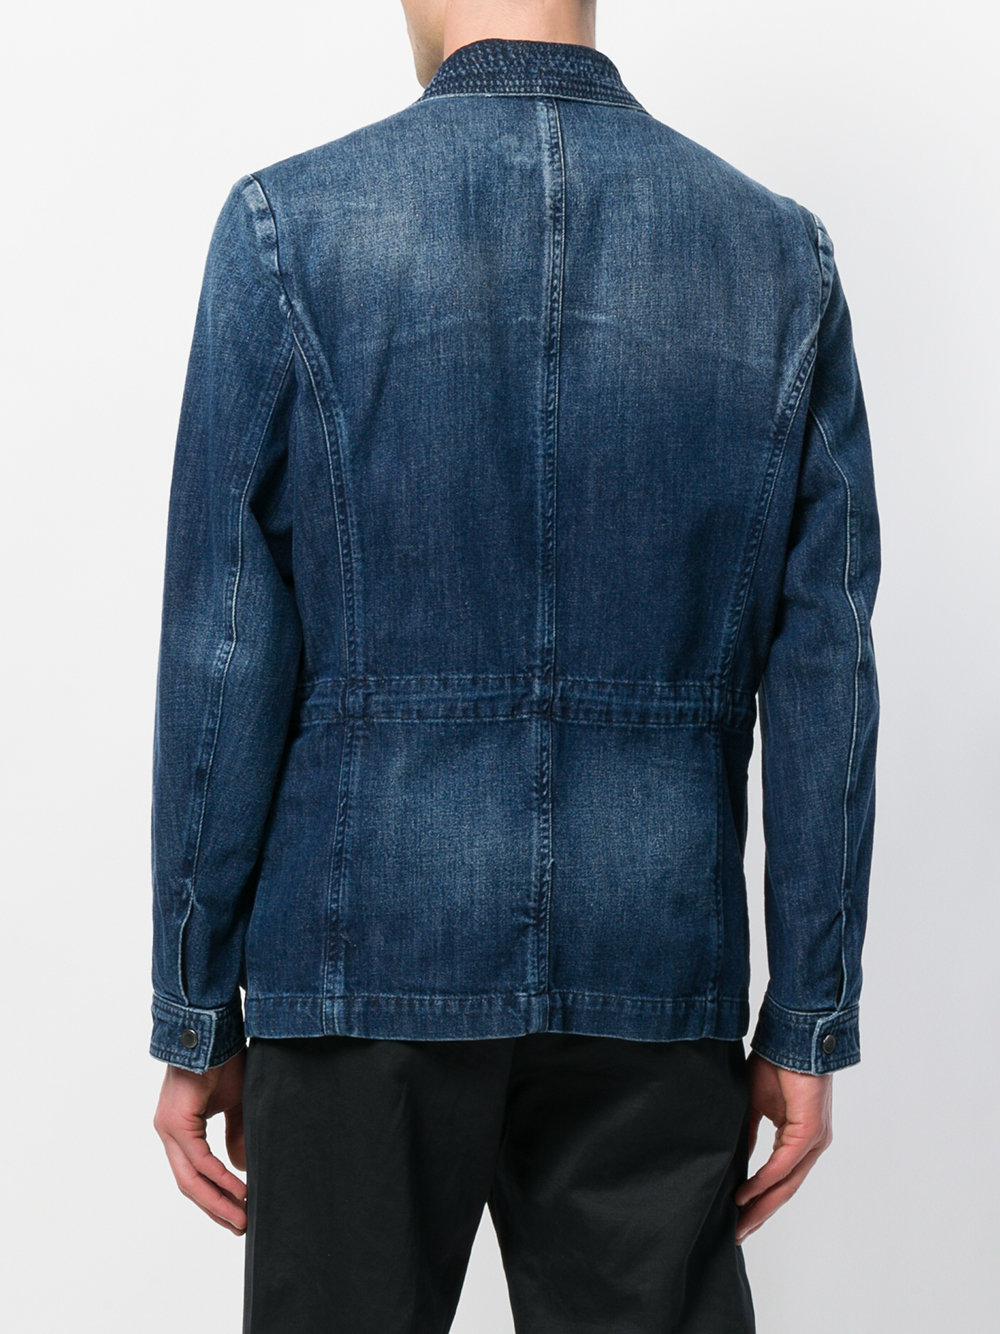 Jacob Cohen Patch Pocket Denim Jacket in Blue for Men - Lyst